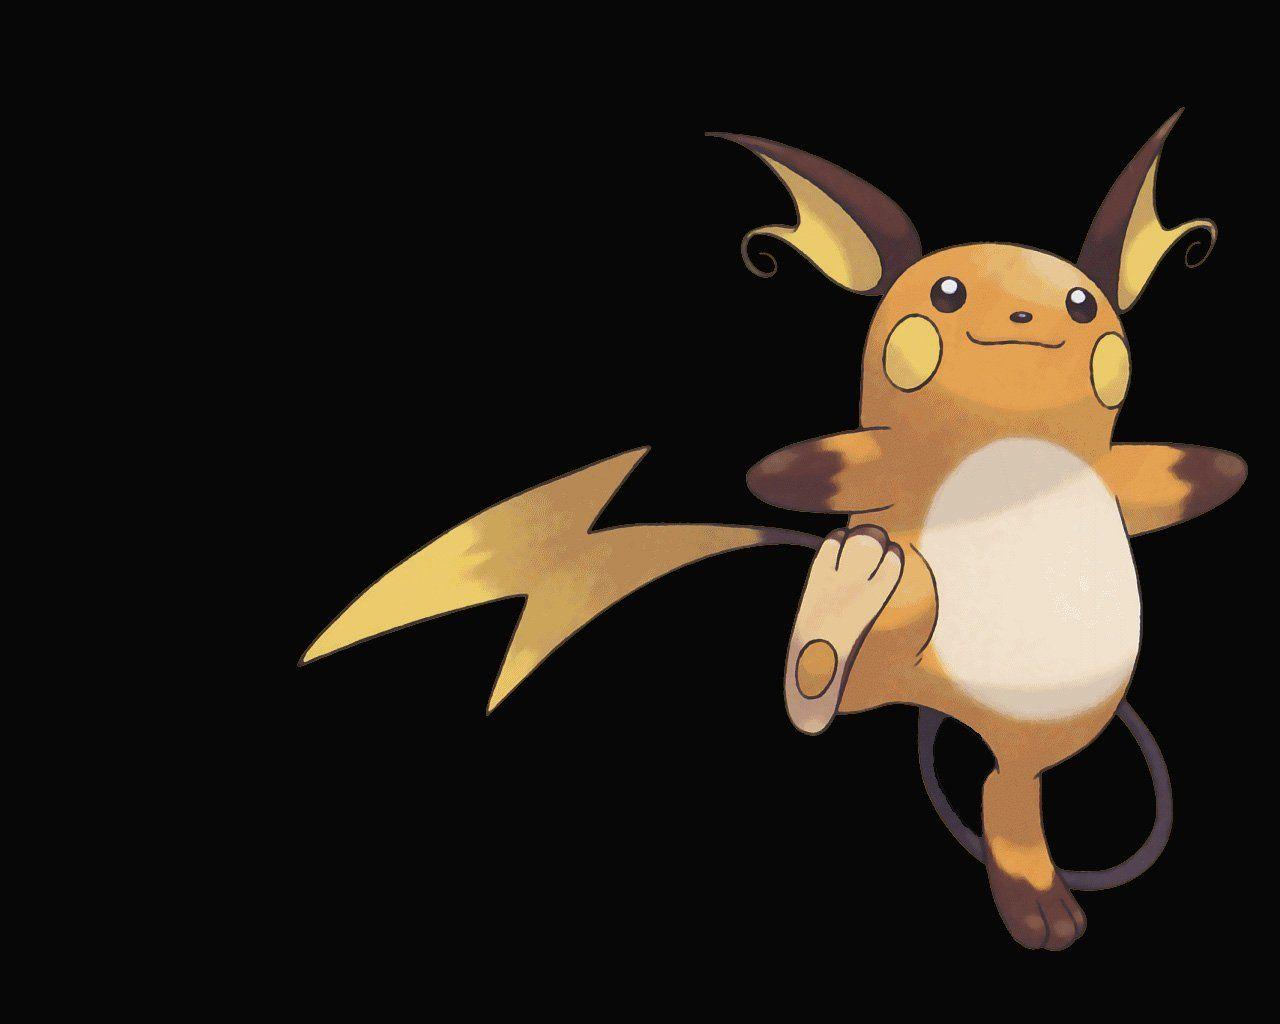 Raichu (Pokémon) HD Wallpaper and Background Image